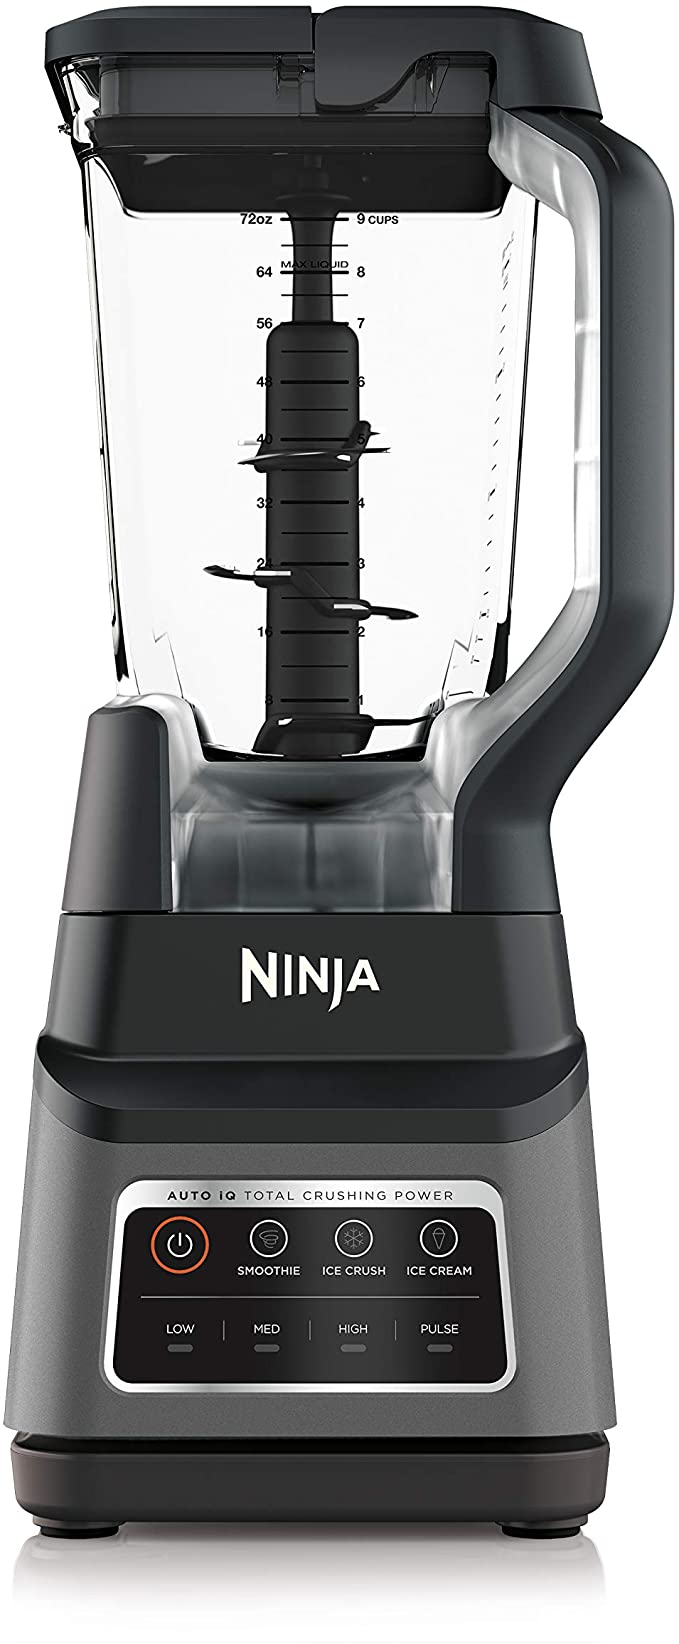 21 Best Ninja Blender Smoothie Recipes - Sip Sip Smoothie